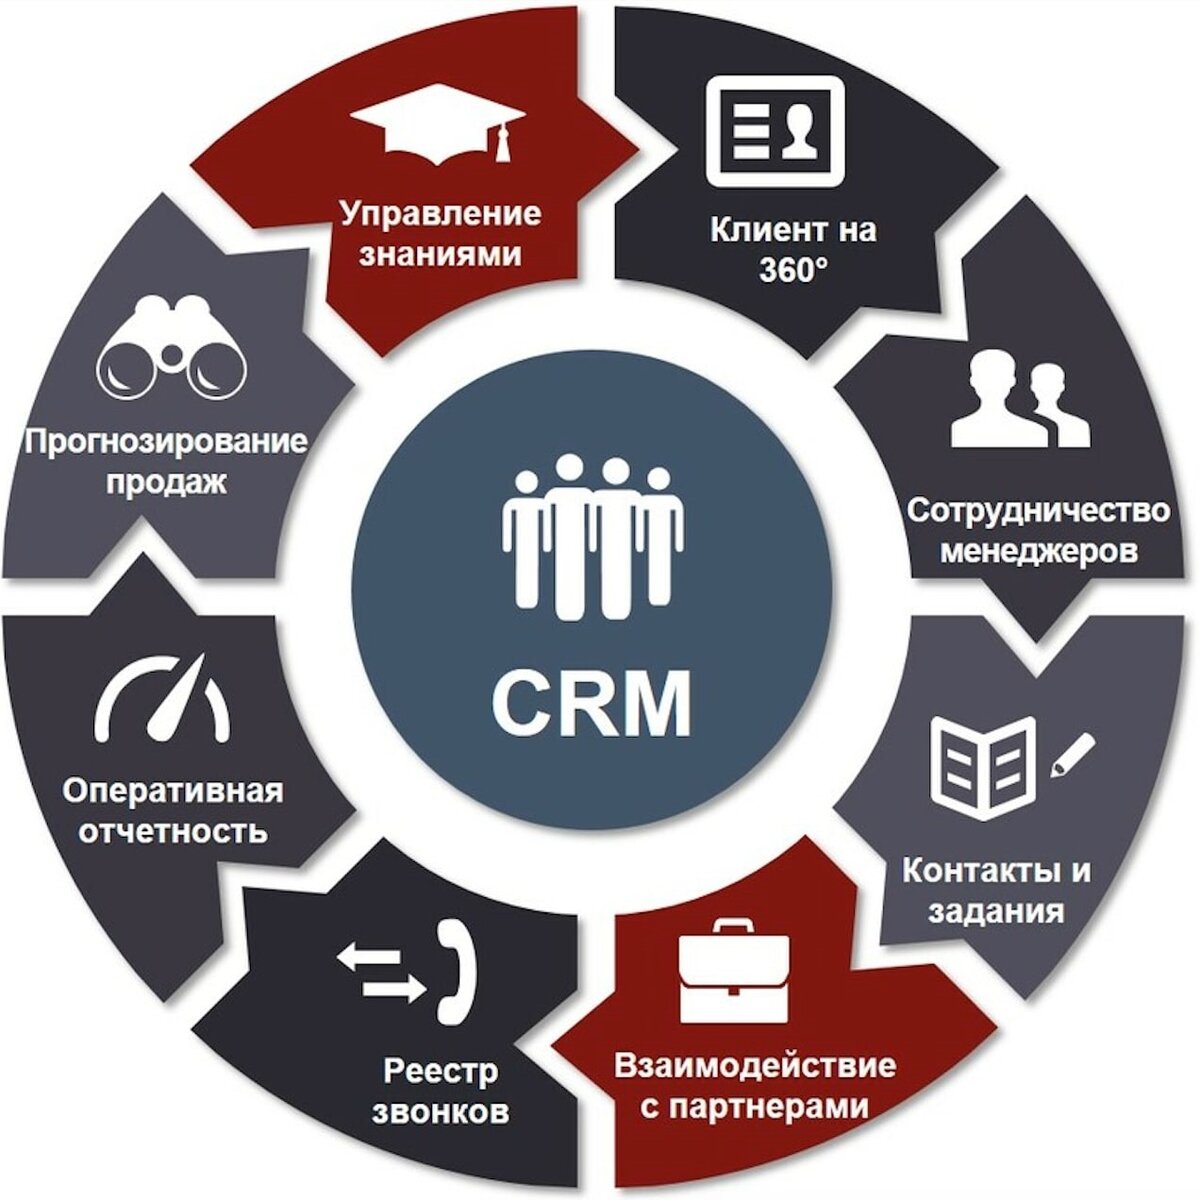 Использование бизнес информации. CRM системы управления взаимоотношениями с клиентами. GRM - система управления ЗВАИМООТНОШЕНИЯ С клиентами. CRM (customer relationship Management) системы. CRM системы что это.